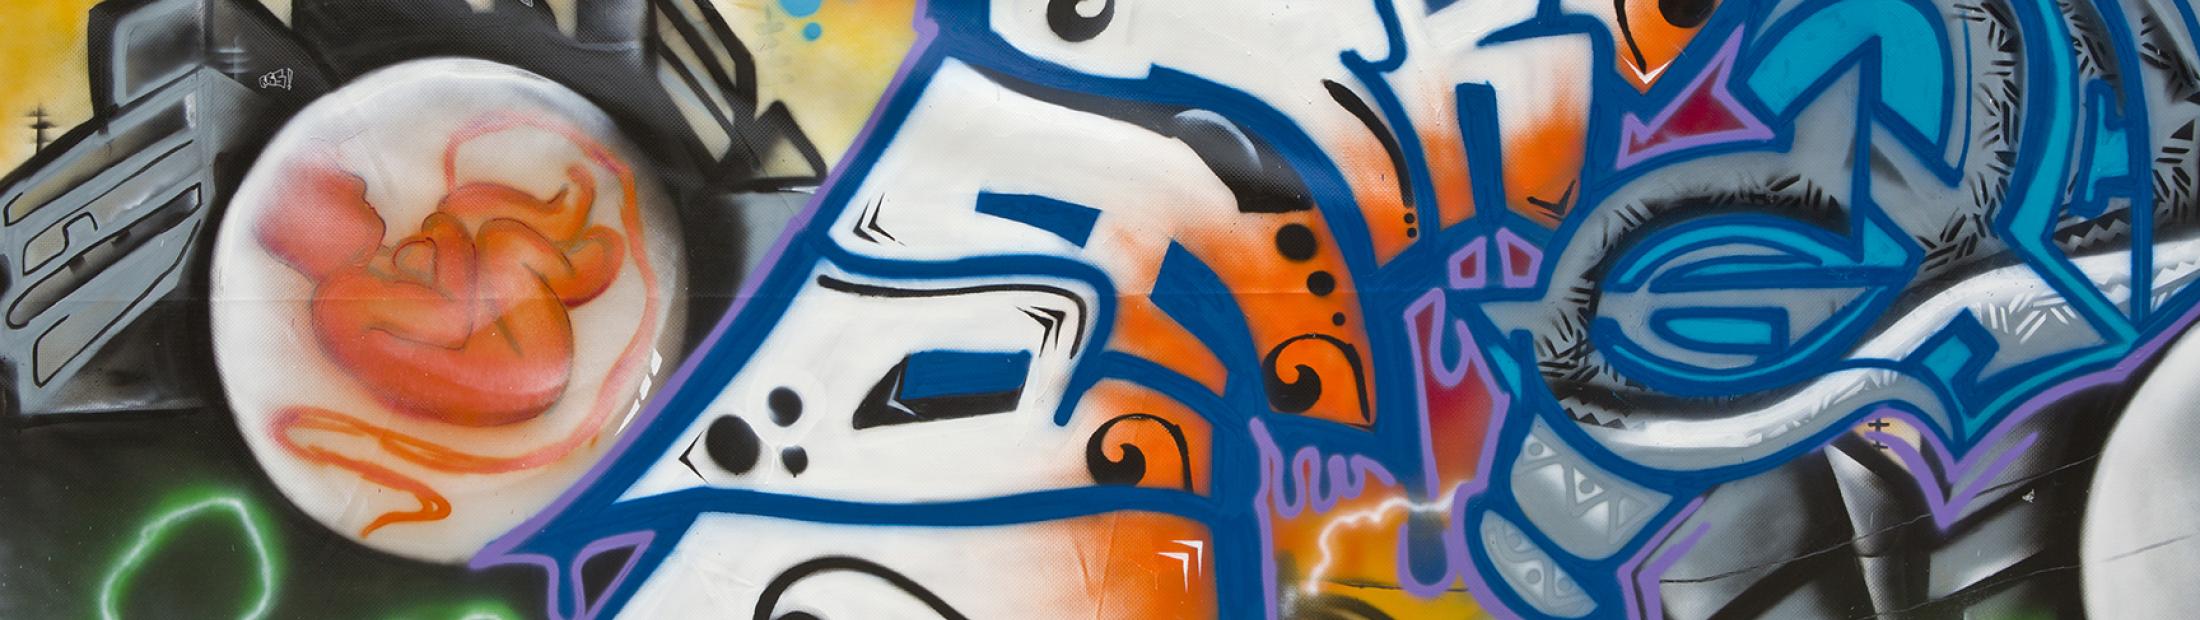 Concurso de graffiti y arte urbano con los refugiados